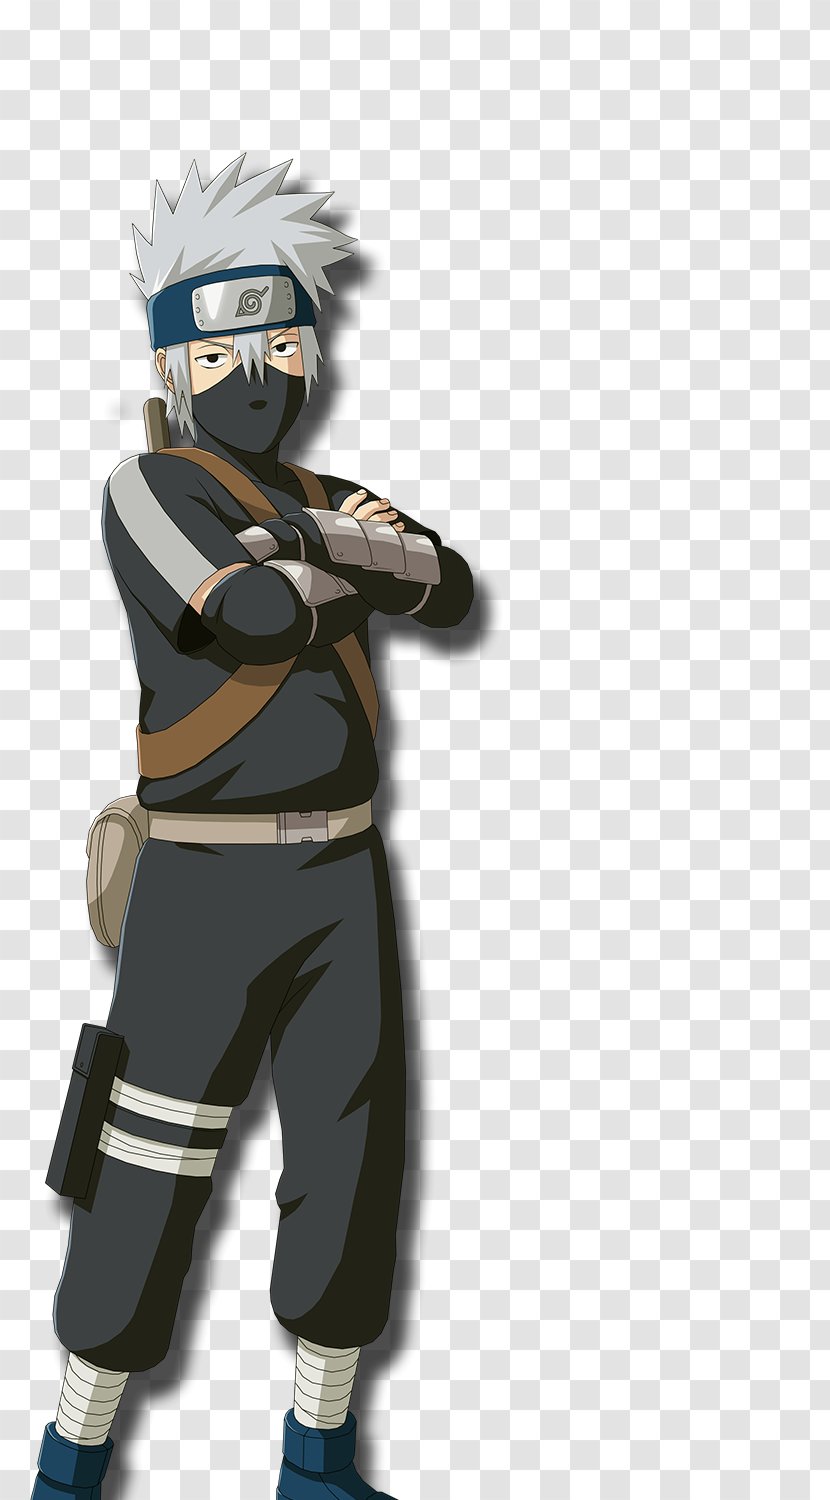 Kakashi Hatake Naruto Shippuden: Ultimate Ninja Storm 4 Sakura Haruno Sasuke Uchiha Uzumaki - Frame Transparent PNG